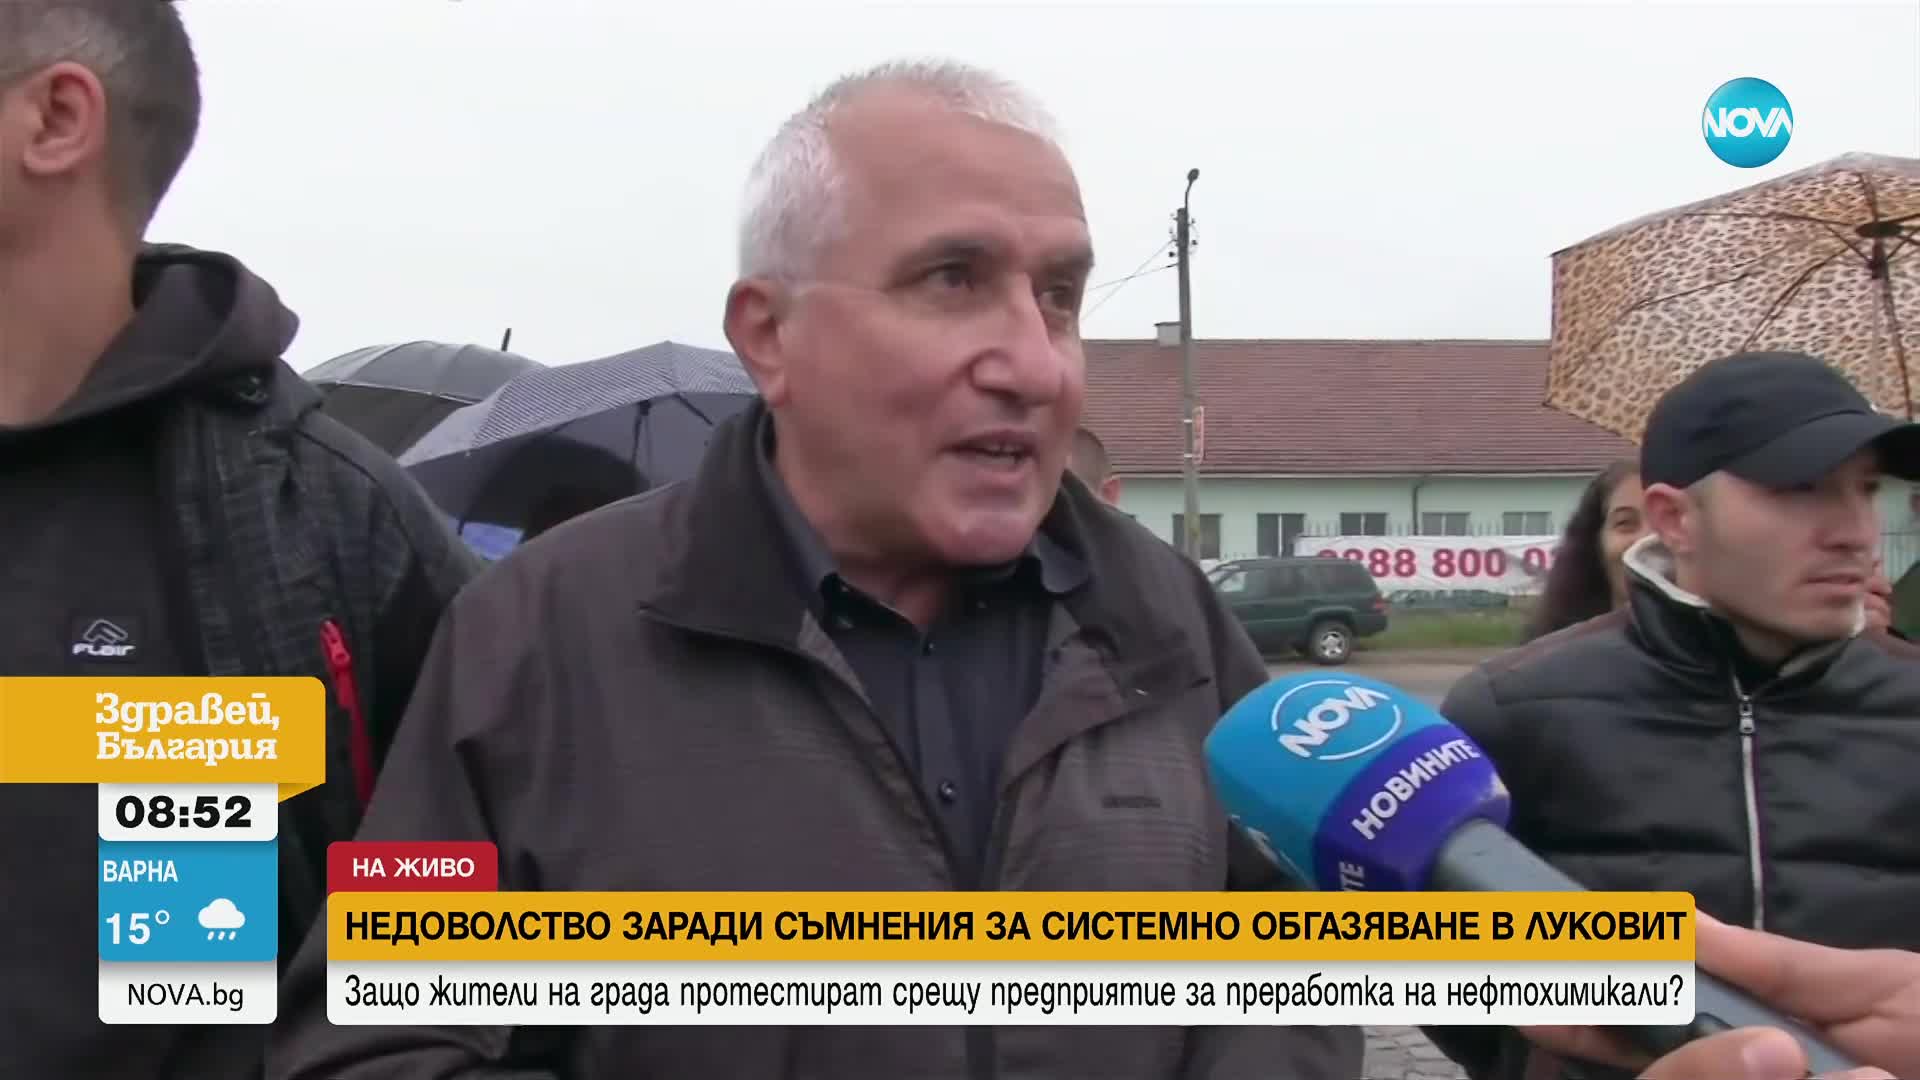 Недоволство заради съмнения за системно обгазяване в Луковит